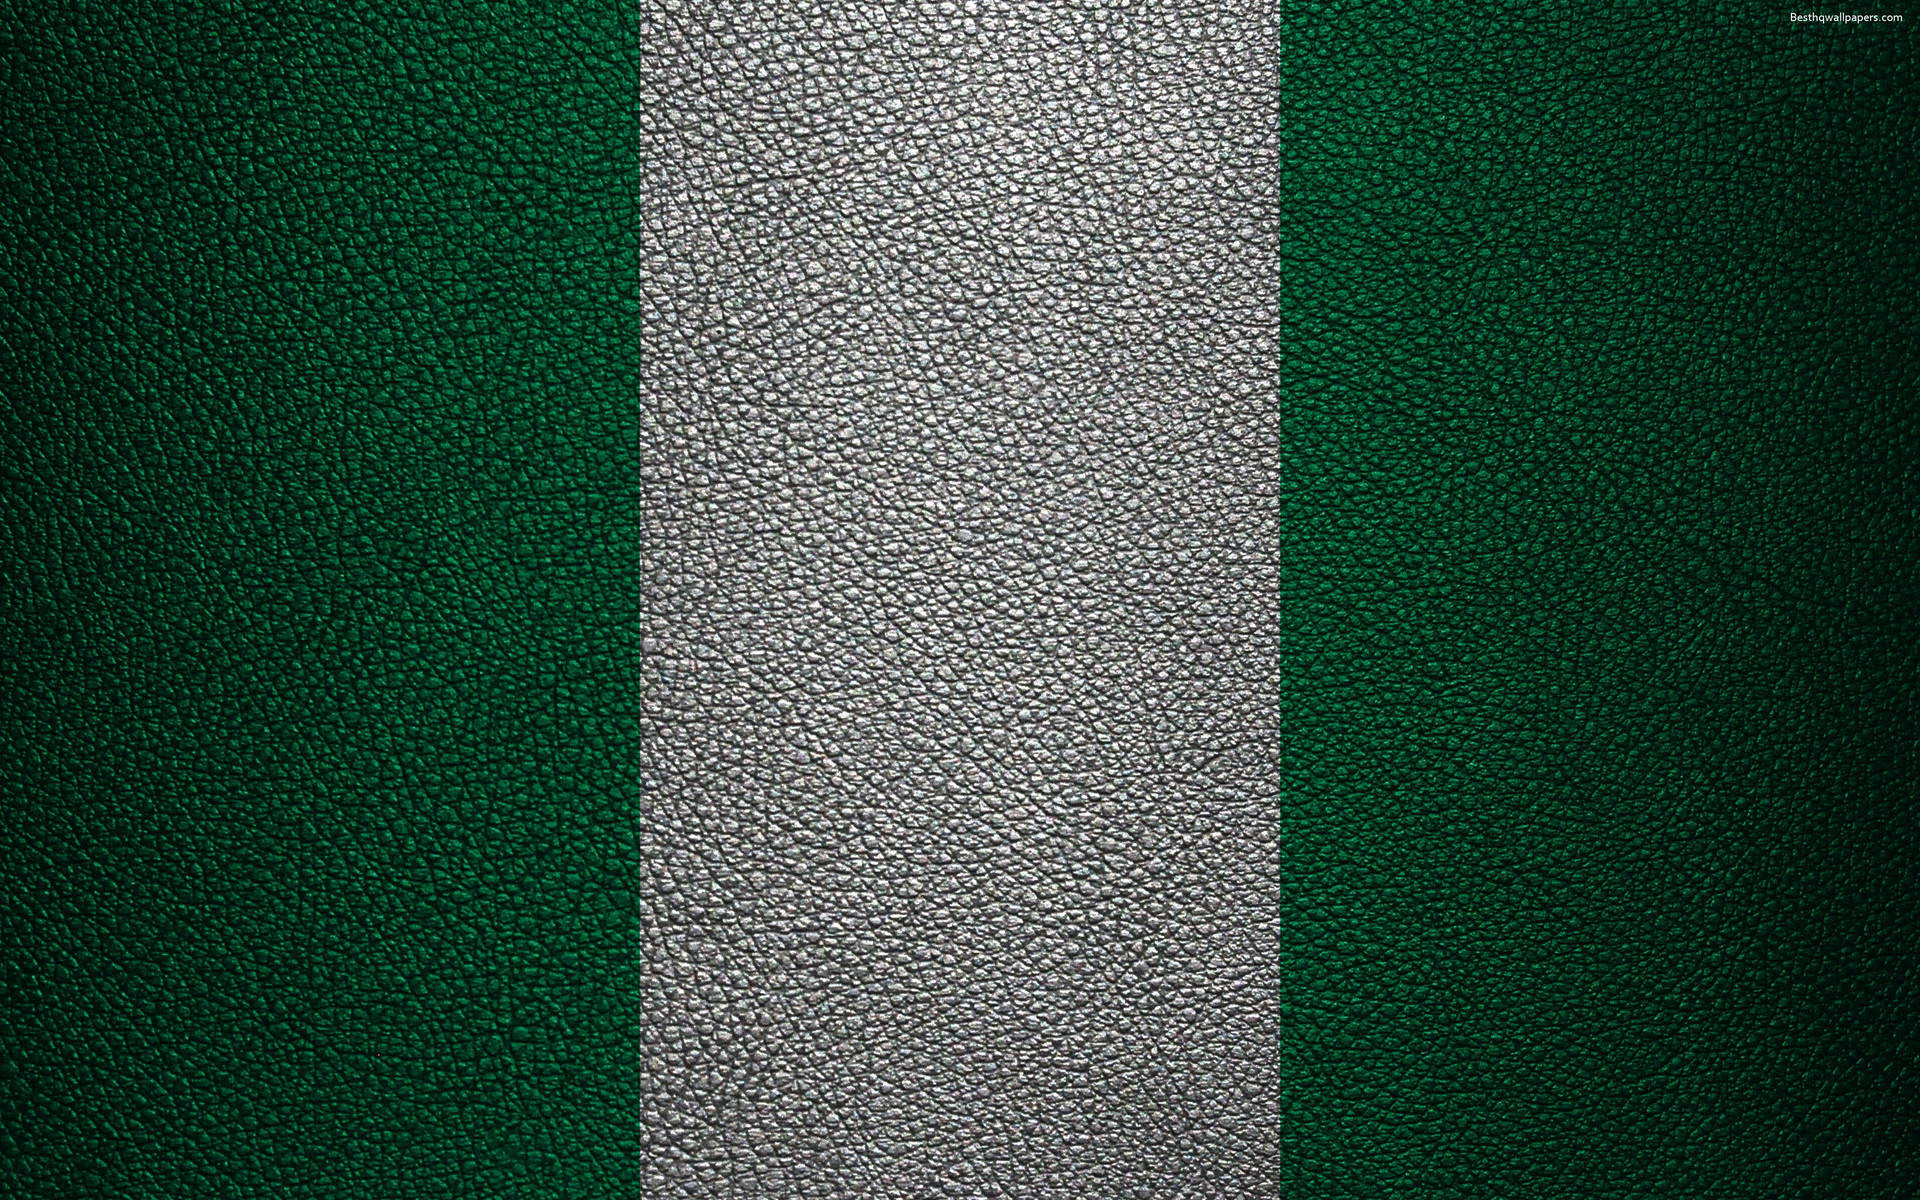 Nigeria Textured Flag Background